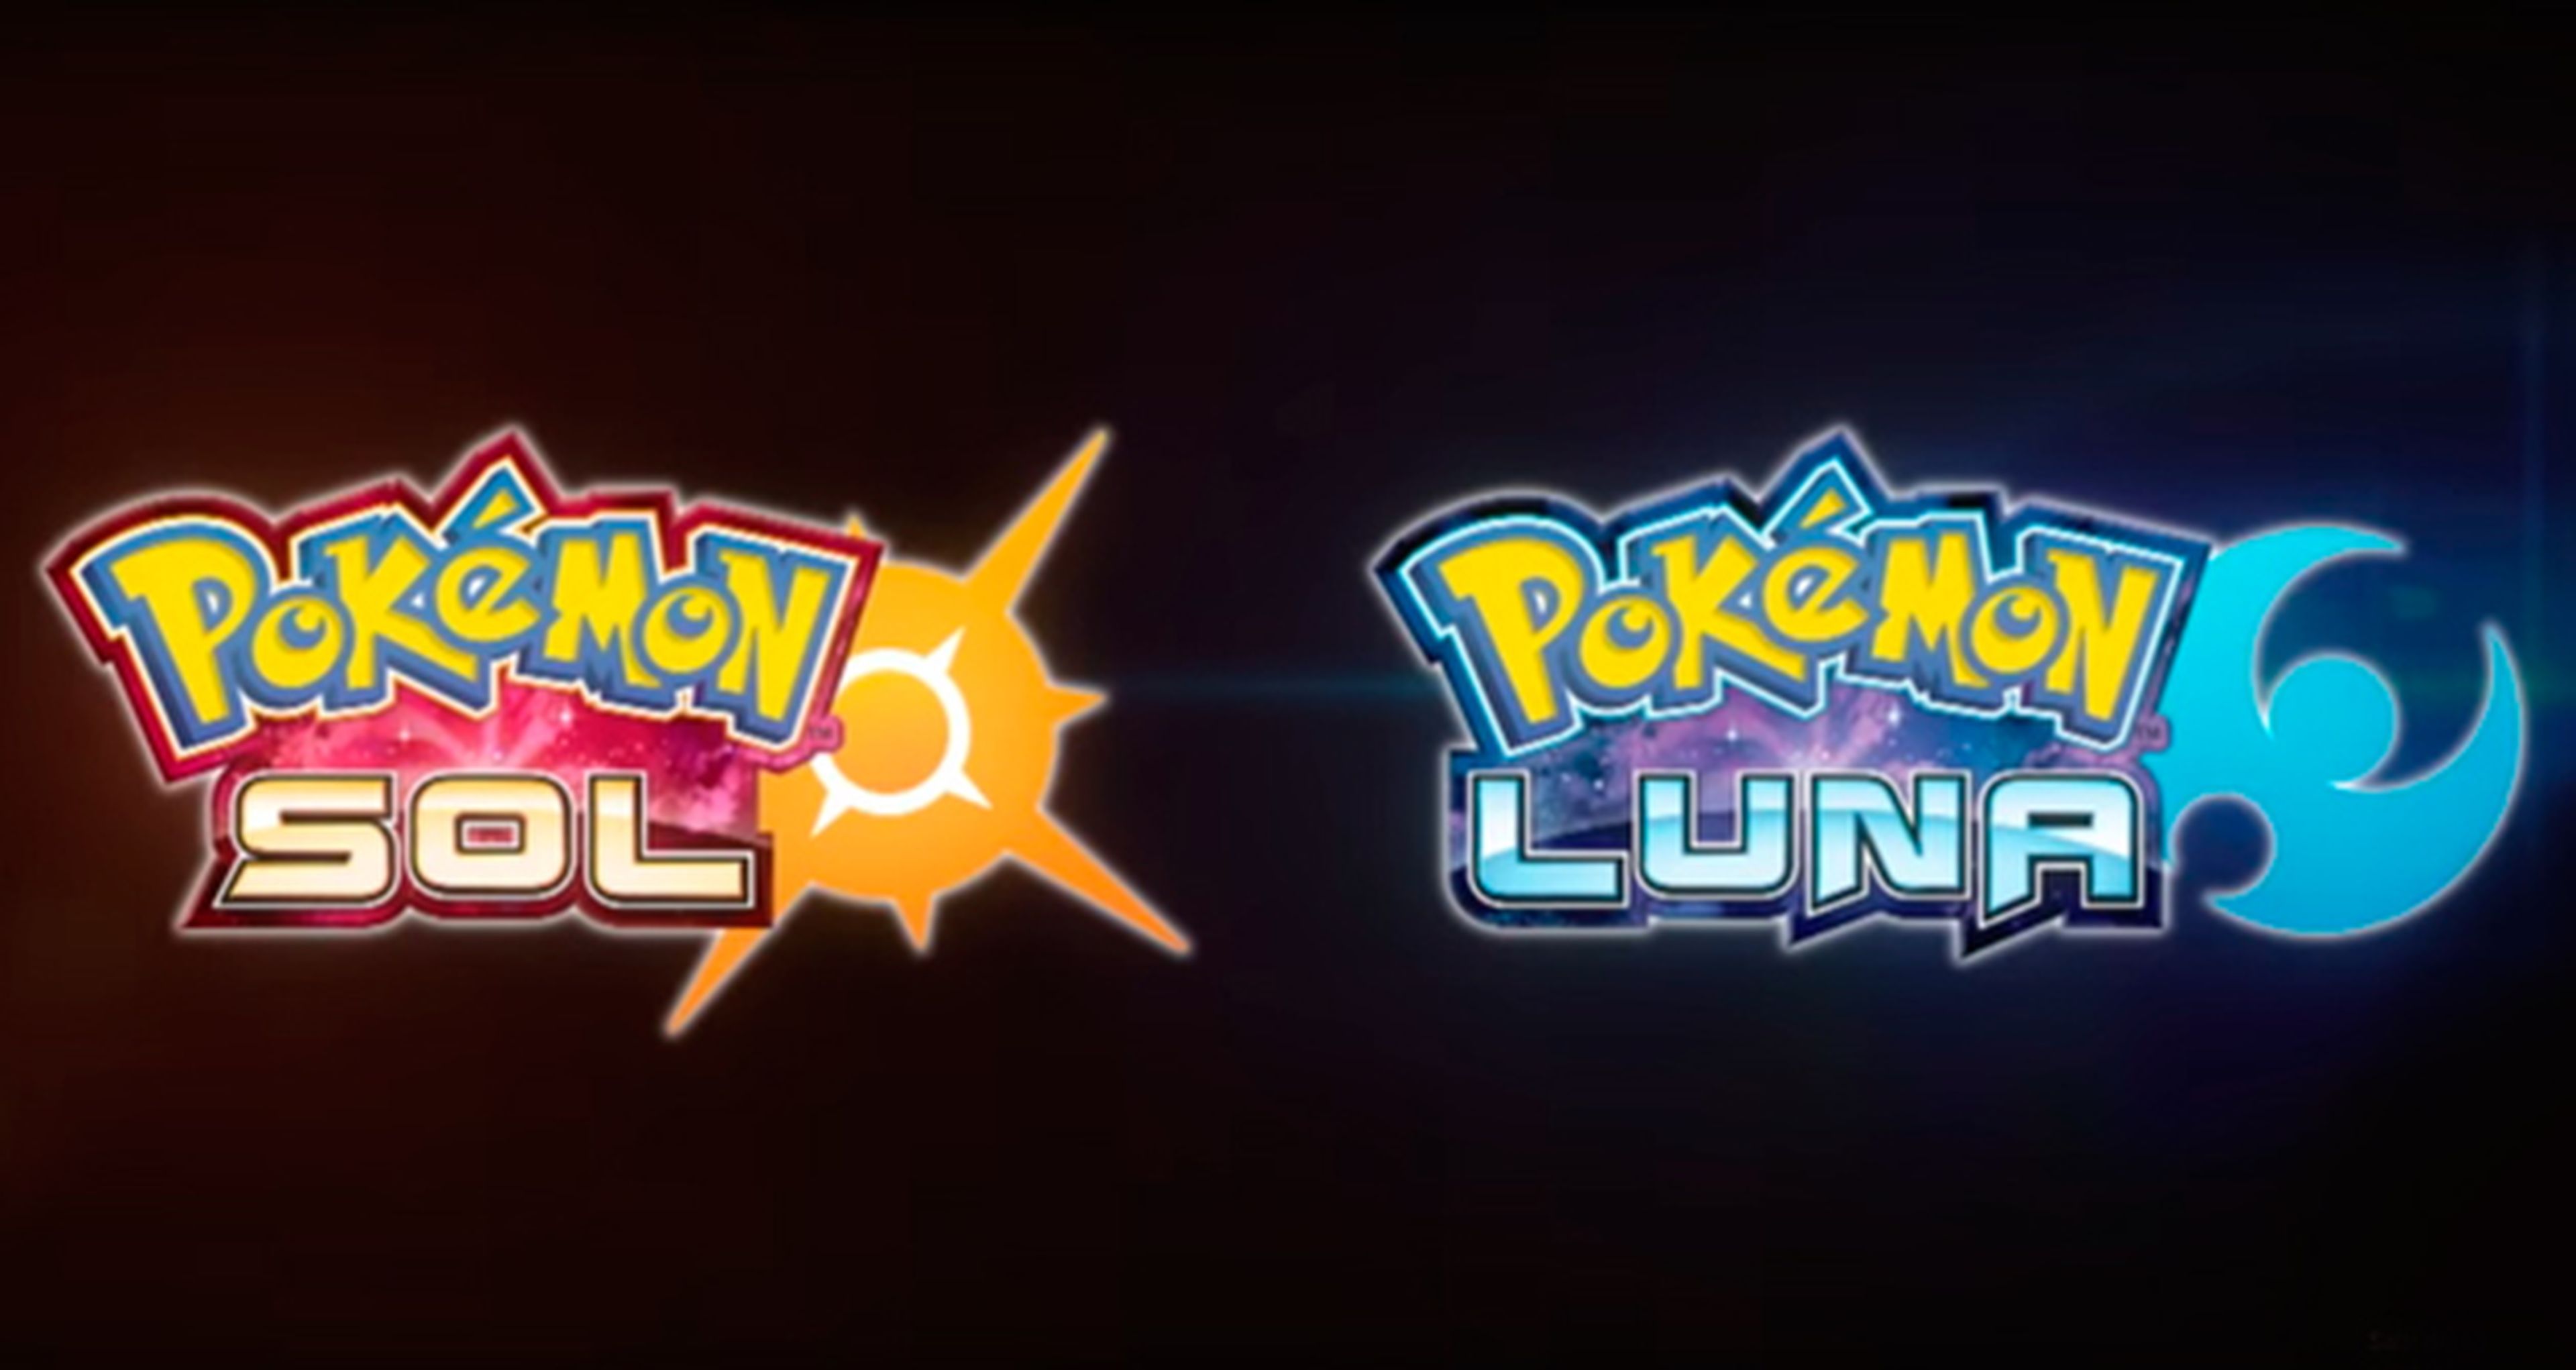 Pokémon Sol y Pokémon Luna - Confirmados los nuevos juegos de Pokémon